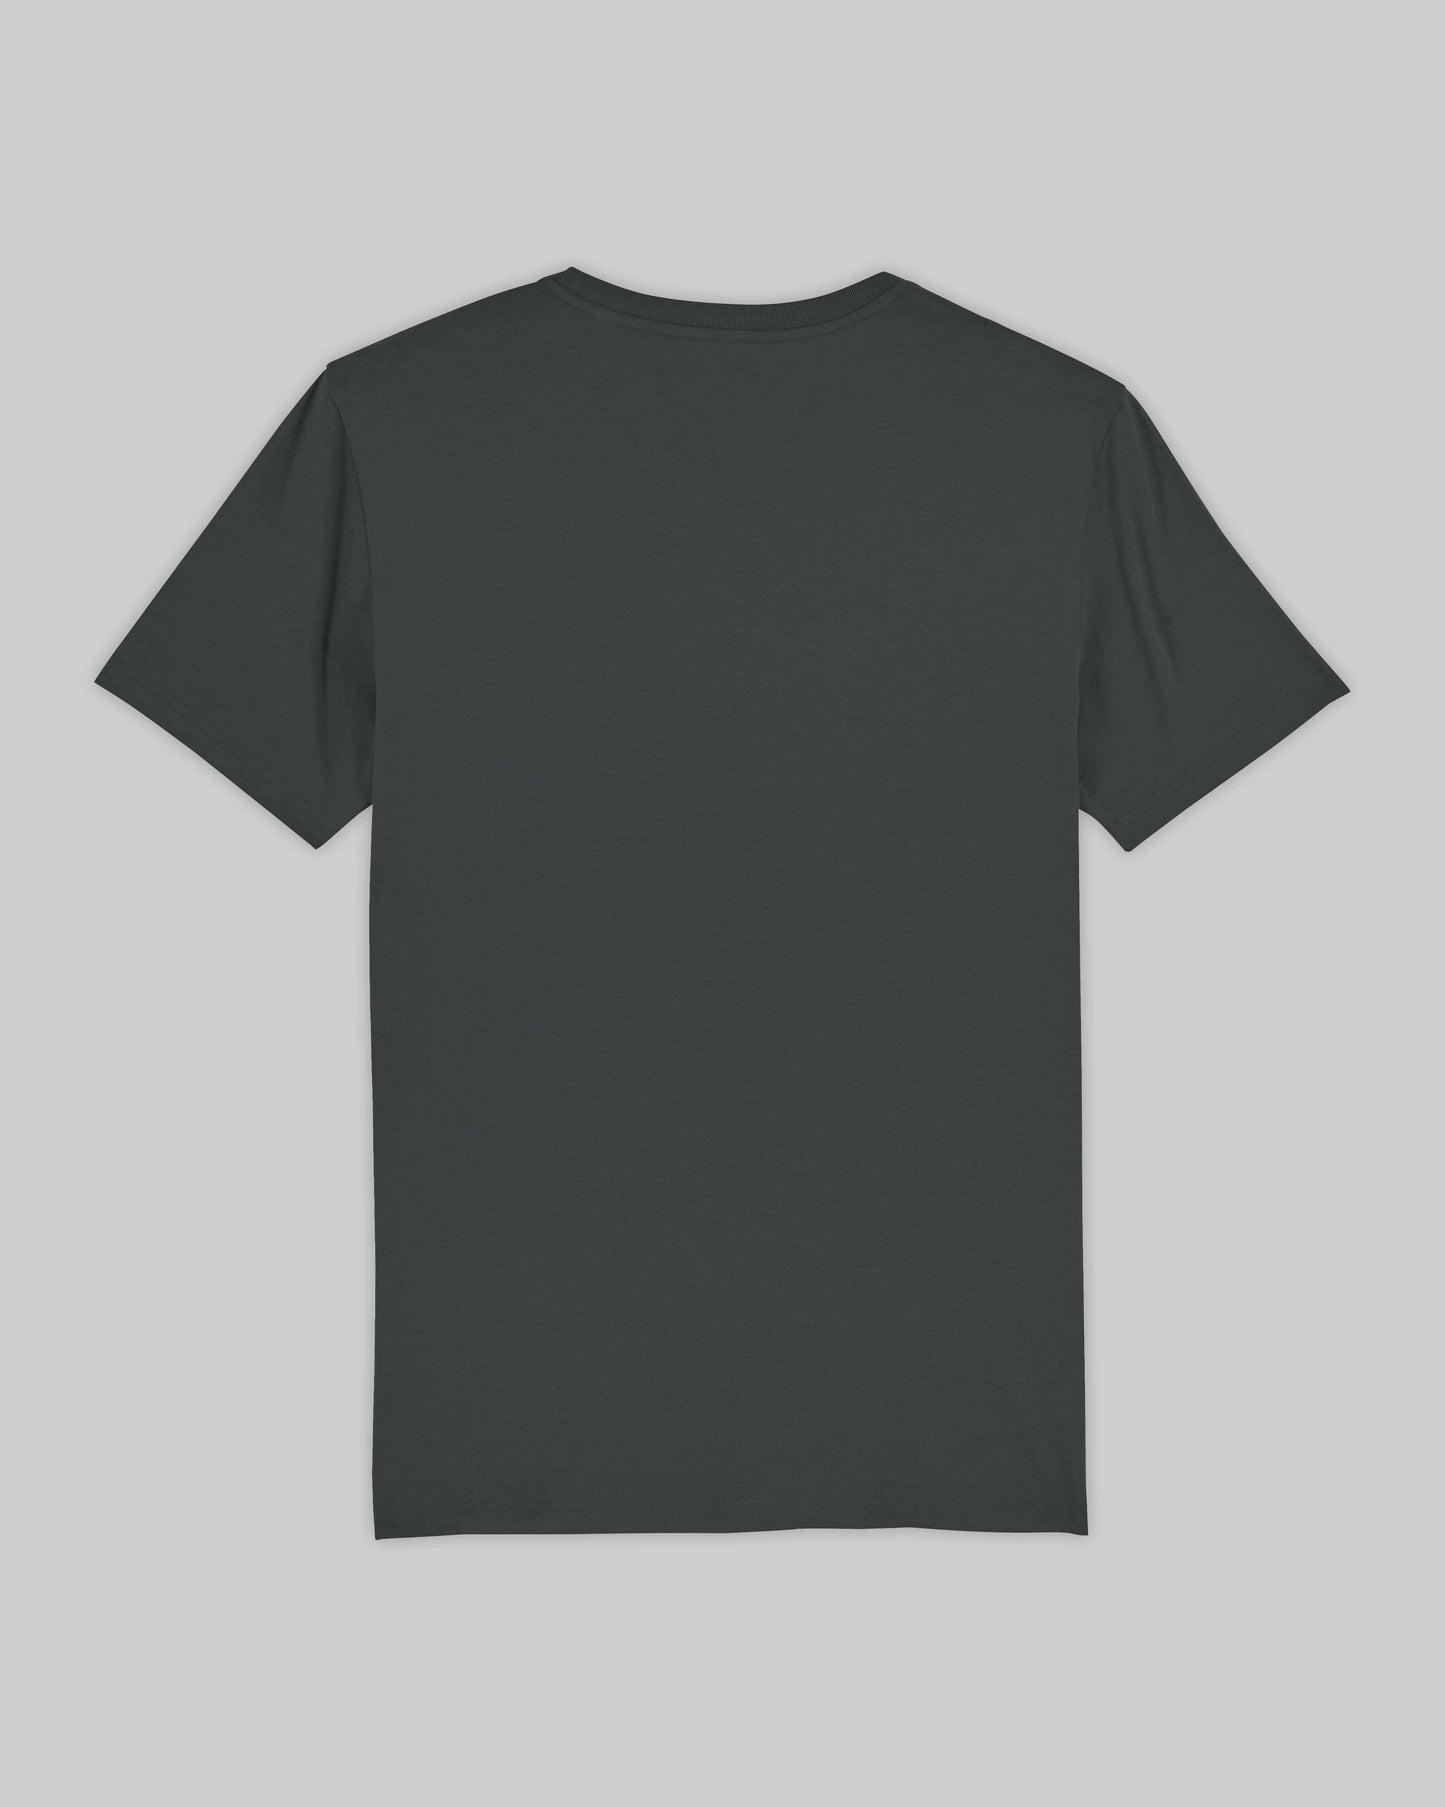 EINHORST® unisex Organic Shirt in "Anthracite" mit dem Motiv "lgbtq+ Regenbogen" in der Kombination schwarzer Regenbogen mit schwarzer Schrift, Bild von Shirt von hinten